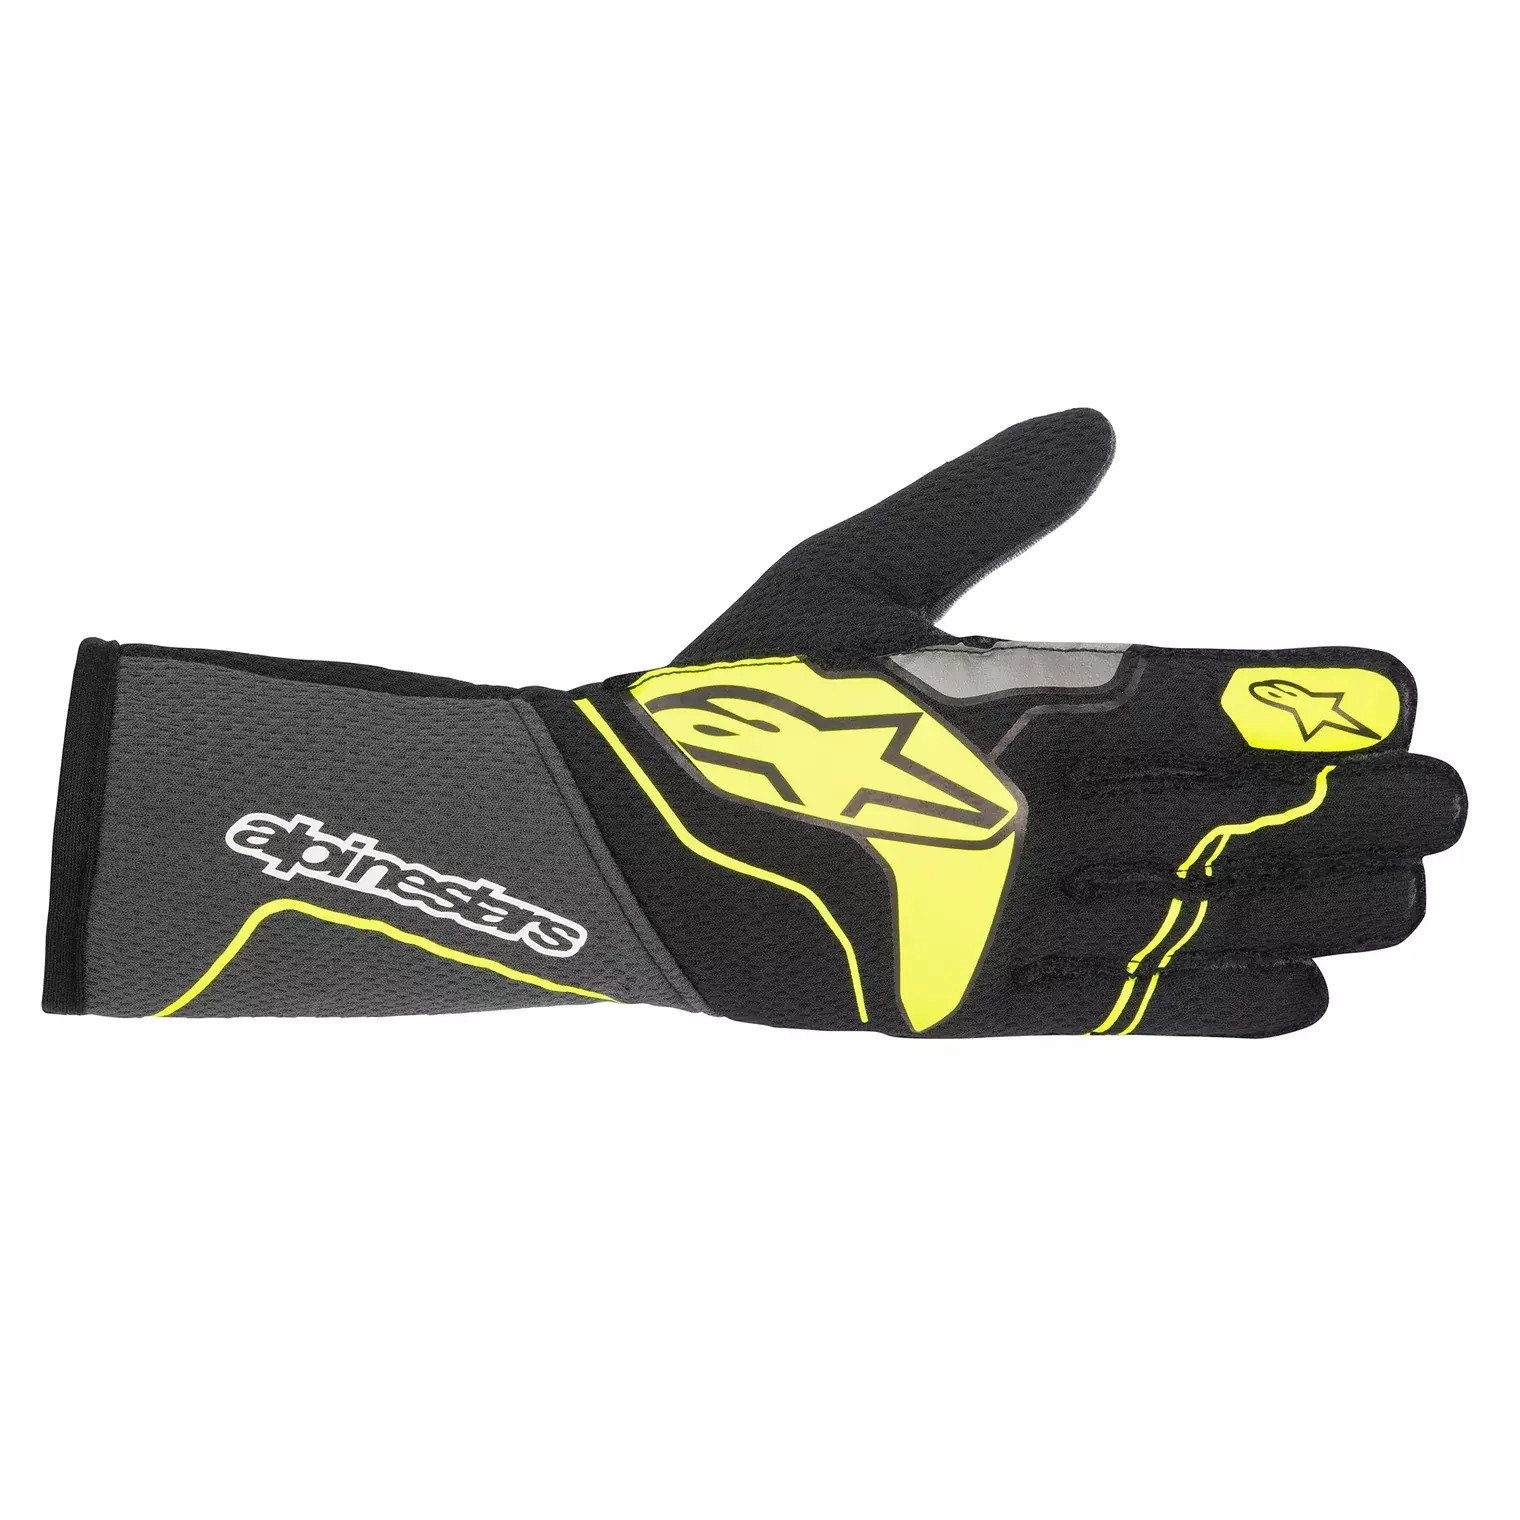 Gloves Tech 1-ZX Gray / Yellow Medium - 3550323-9151-M